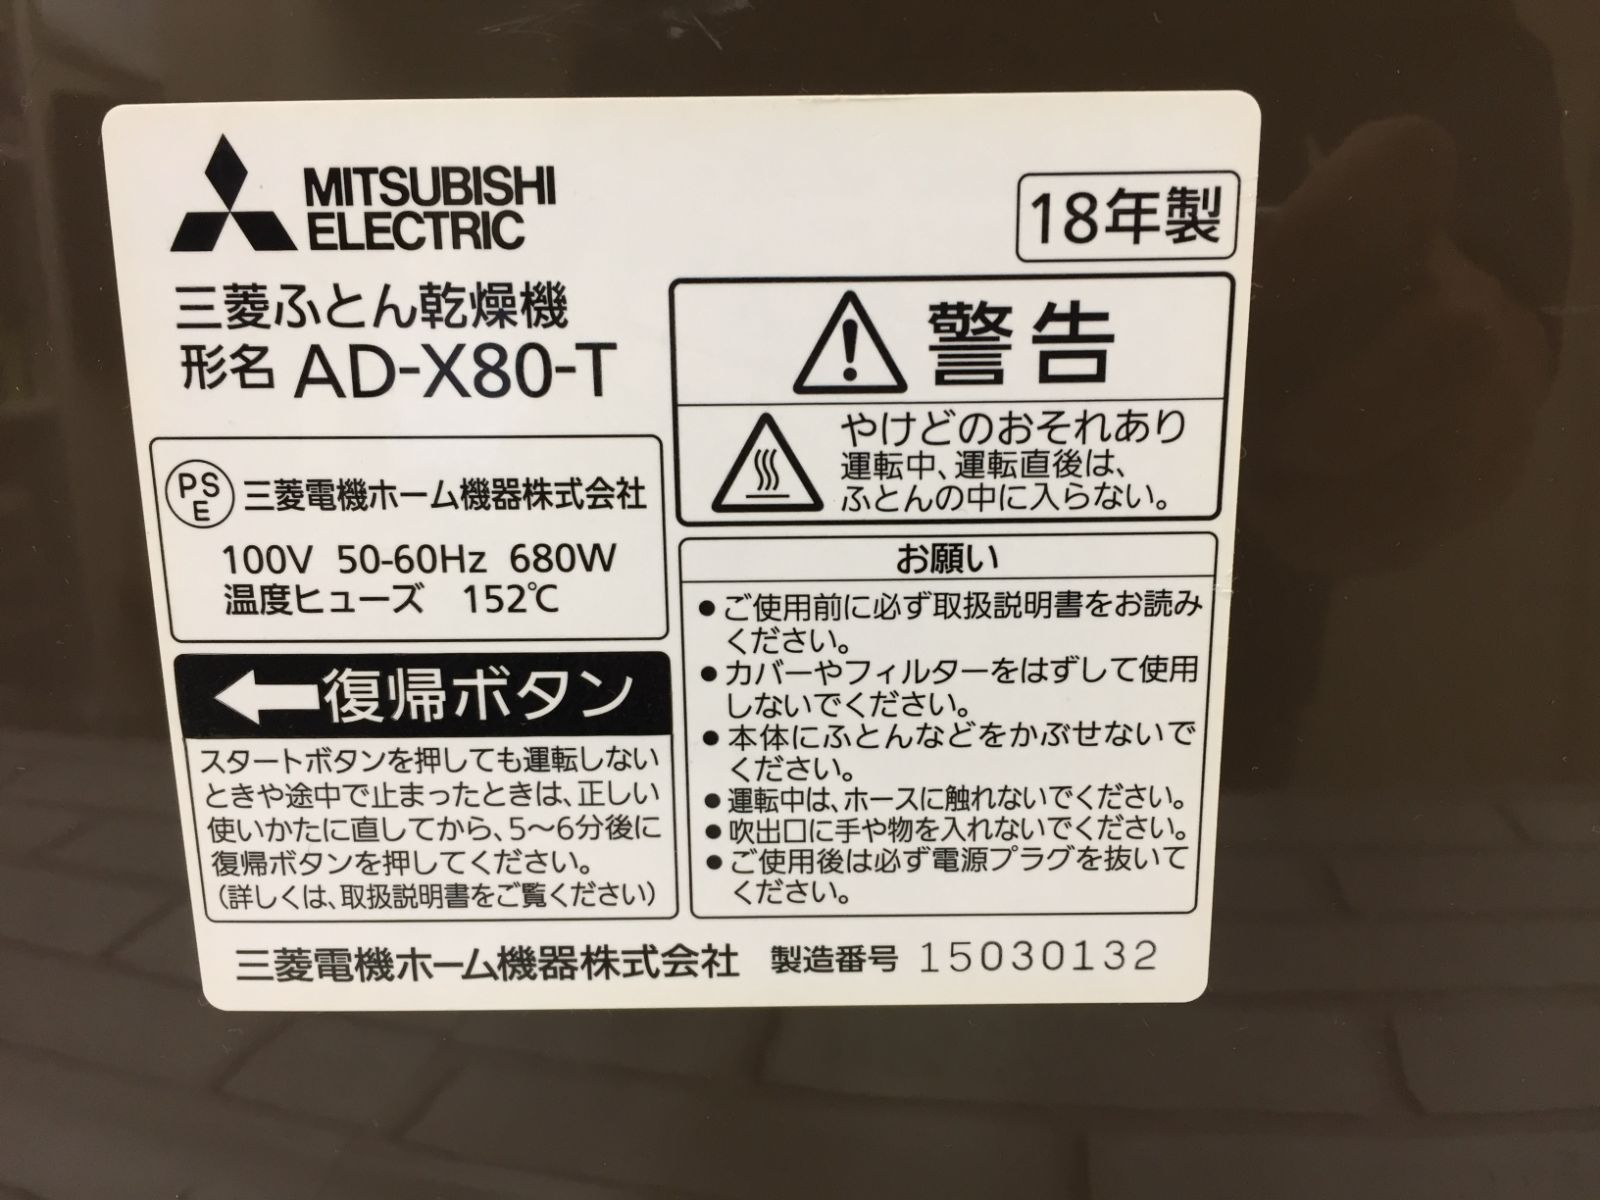 日本未入荷 布団乾燥機 AD-X80-T 三菱電機 2019年製 elipd.org